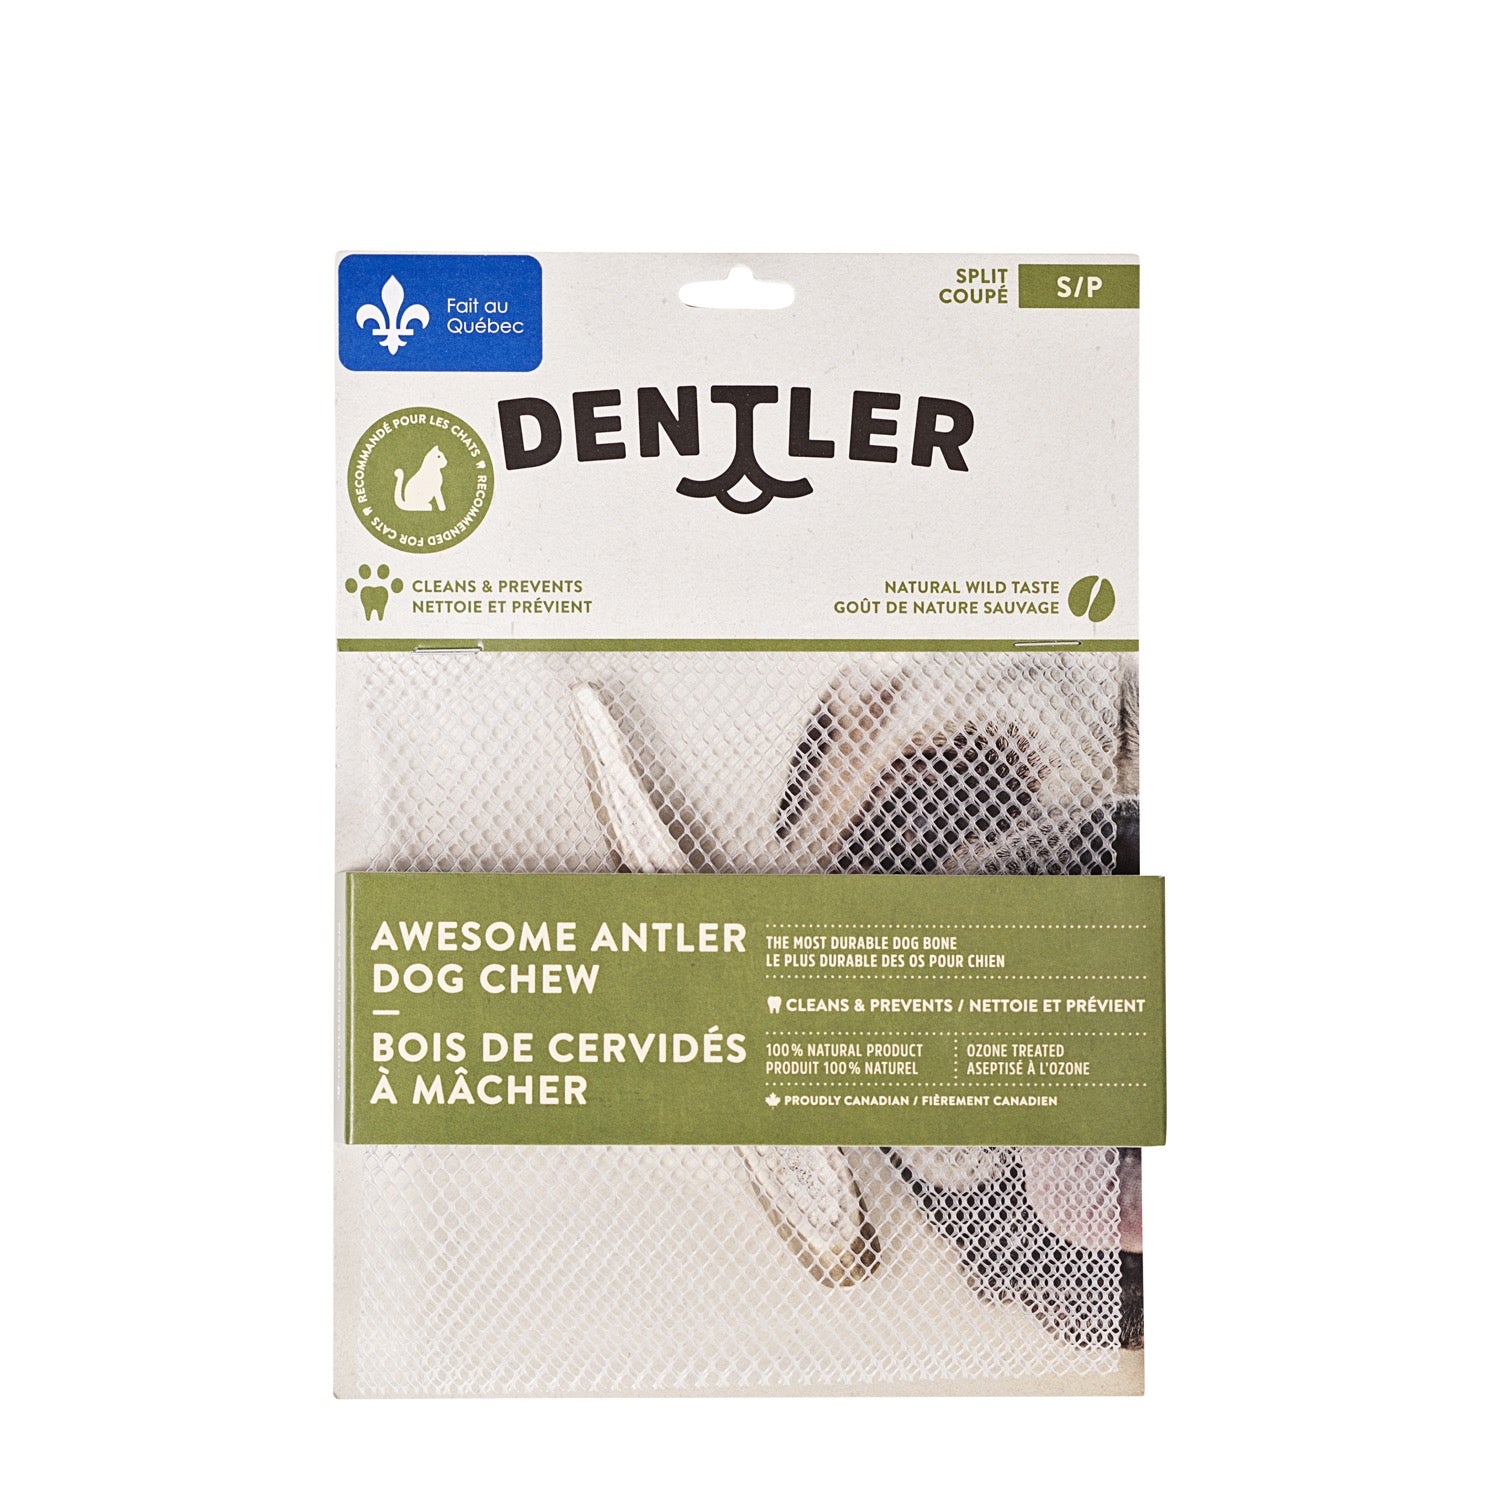 Dentler - Natural Wild Taste (Split)